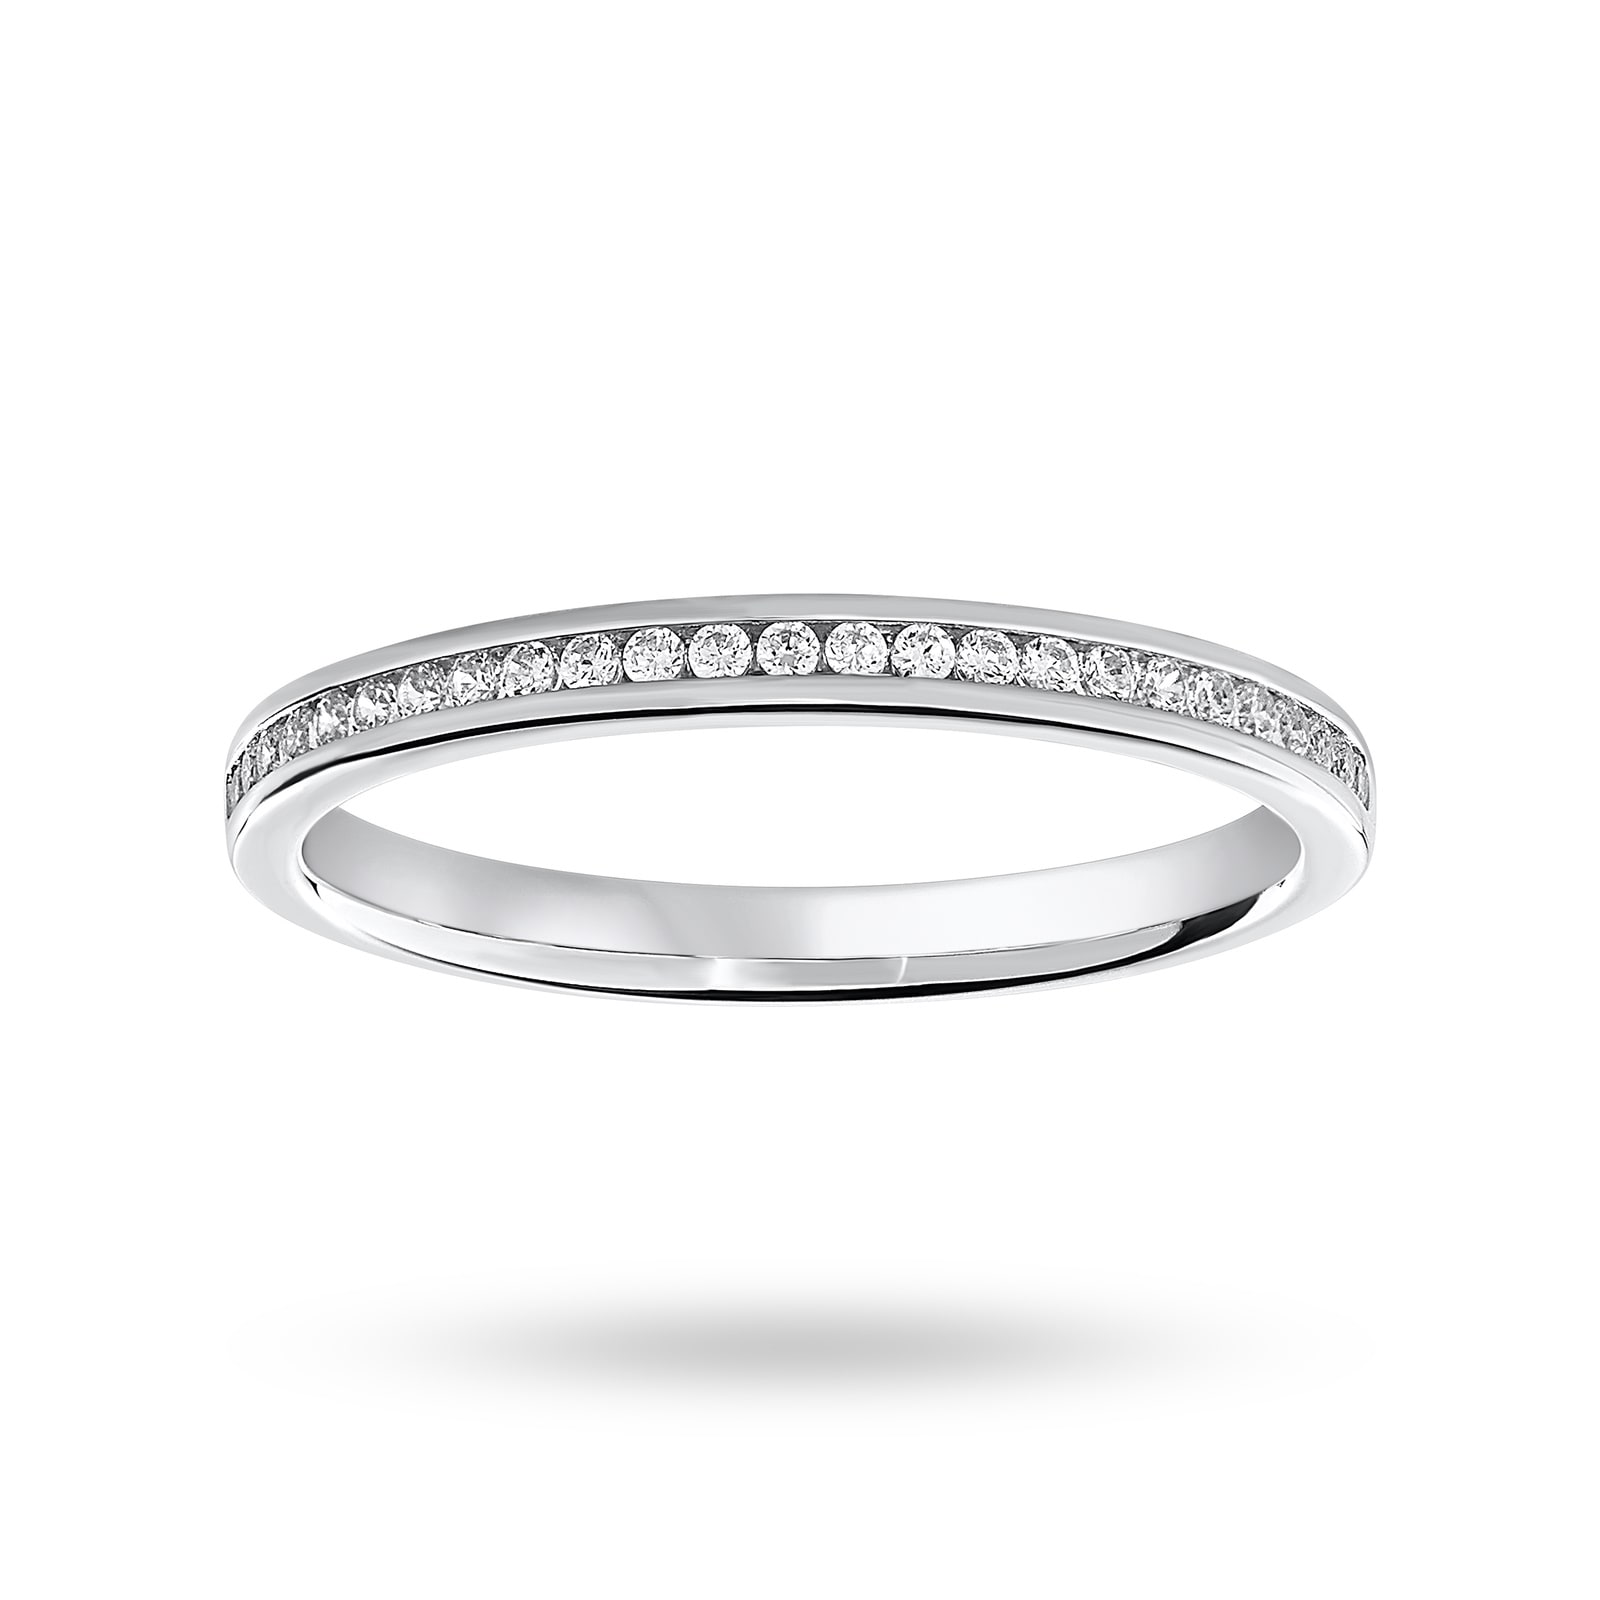 Platinum 012 Carat Brilliant Cut Half Eternity Ring Ring Size K